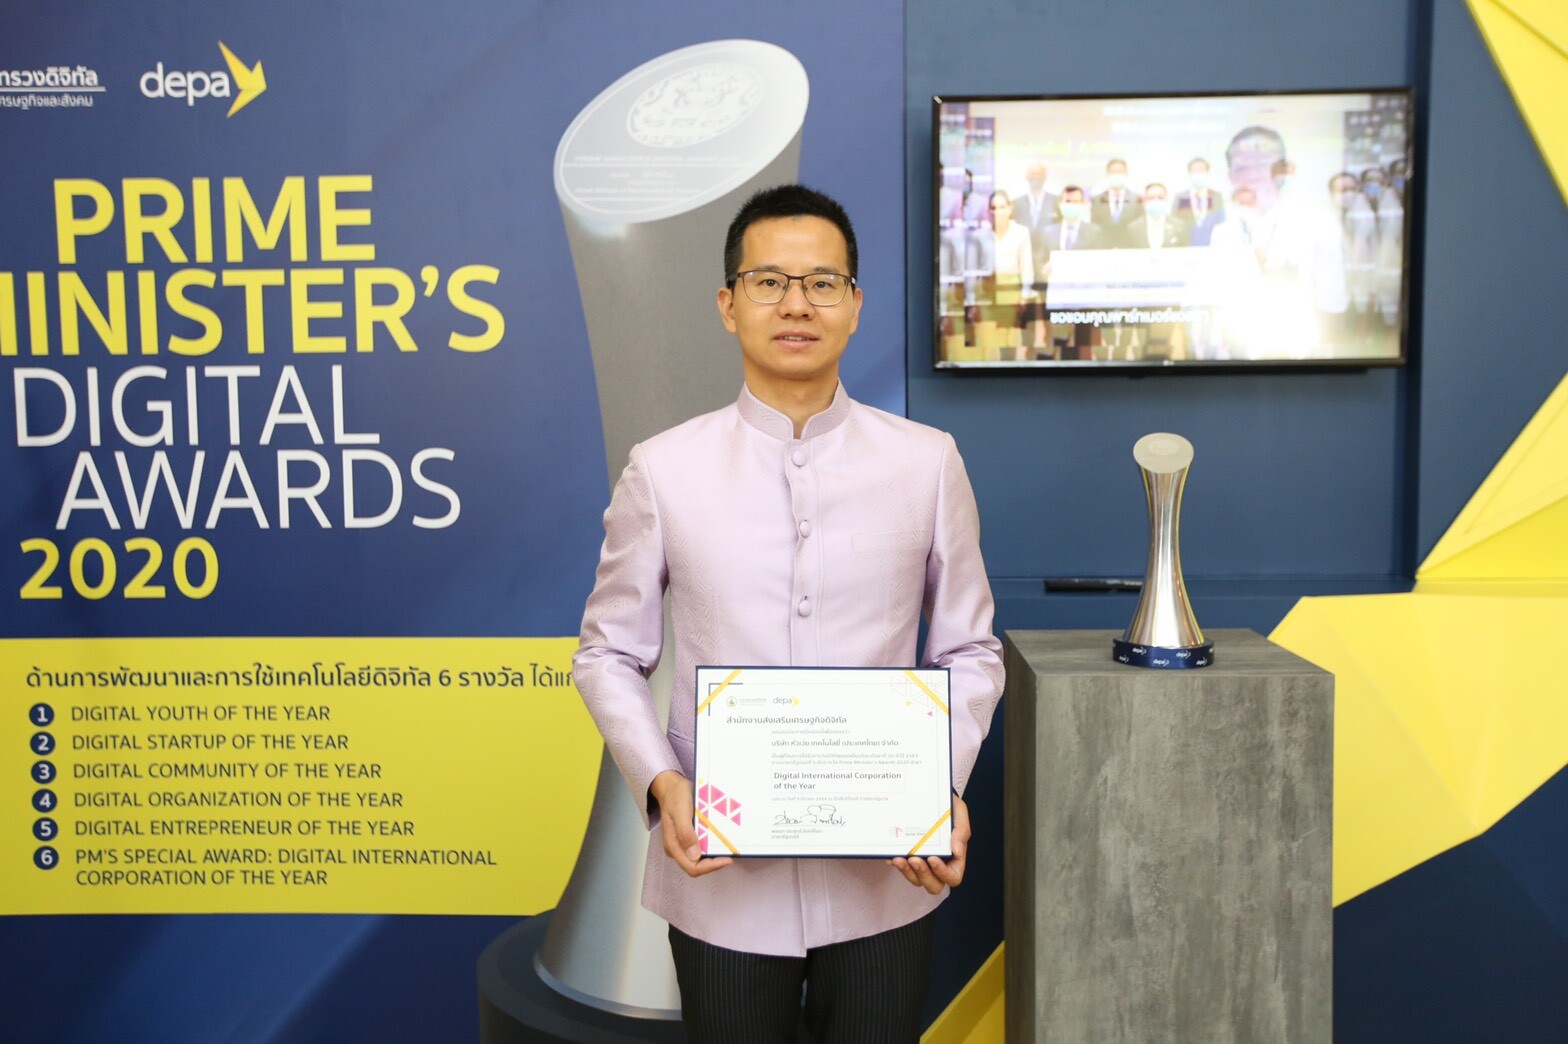 หัวเว่ย ประเทศไทย คว้ารางวัล "พีเอ็ม ดิจิทัล อวอร์ด" (PM Digital Awards) ประเภท Digital International Corporation of the Year สำหรับองค์กรข้ามชาติ